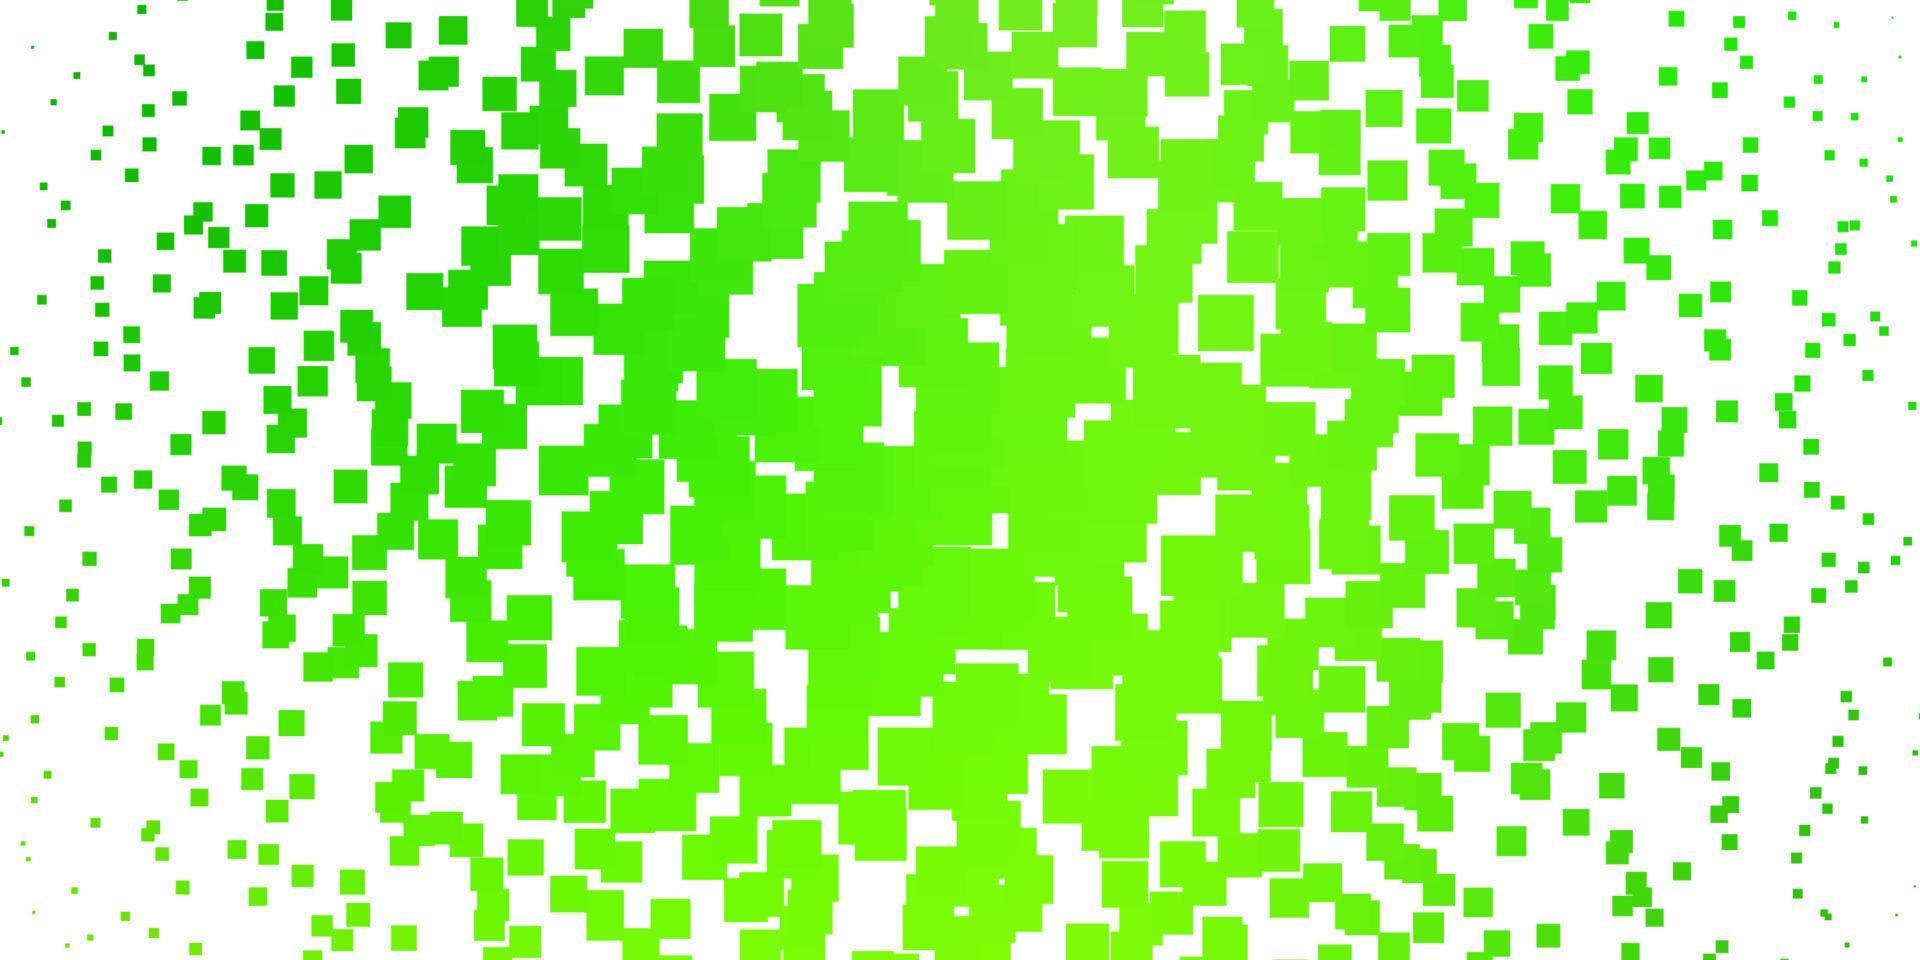 textura de vetor verde claro em estilo retangular.